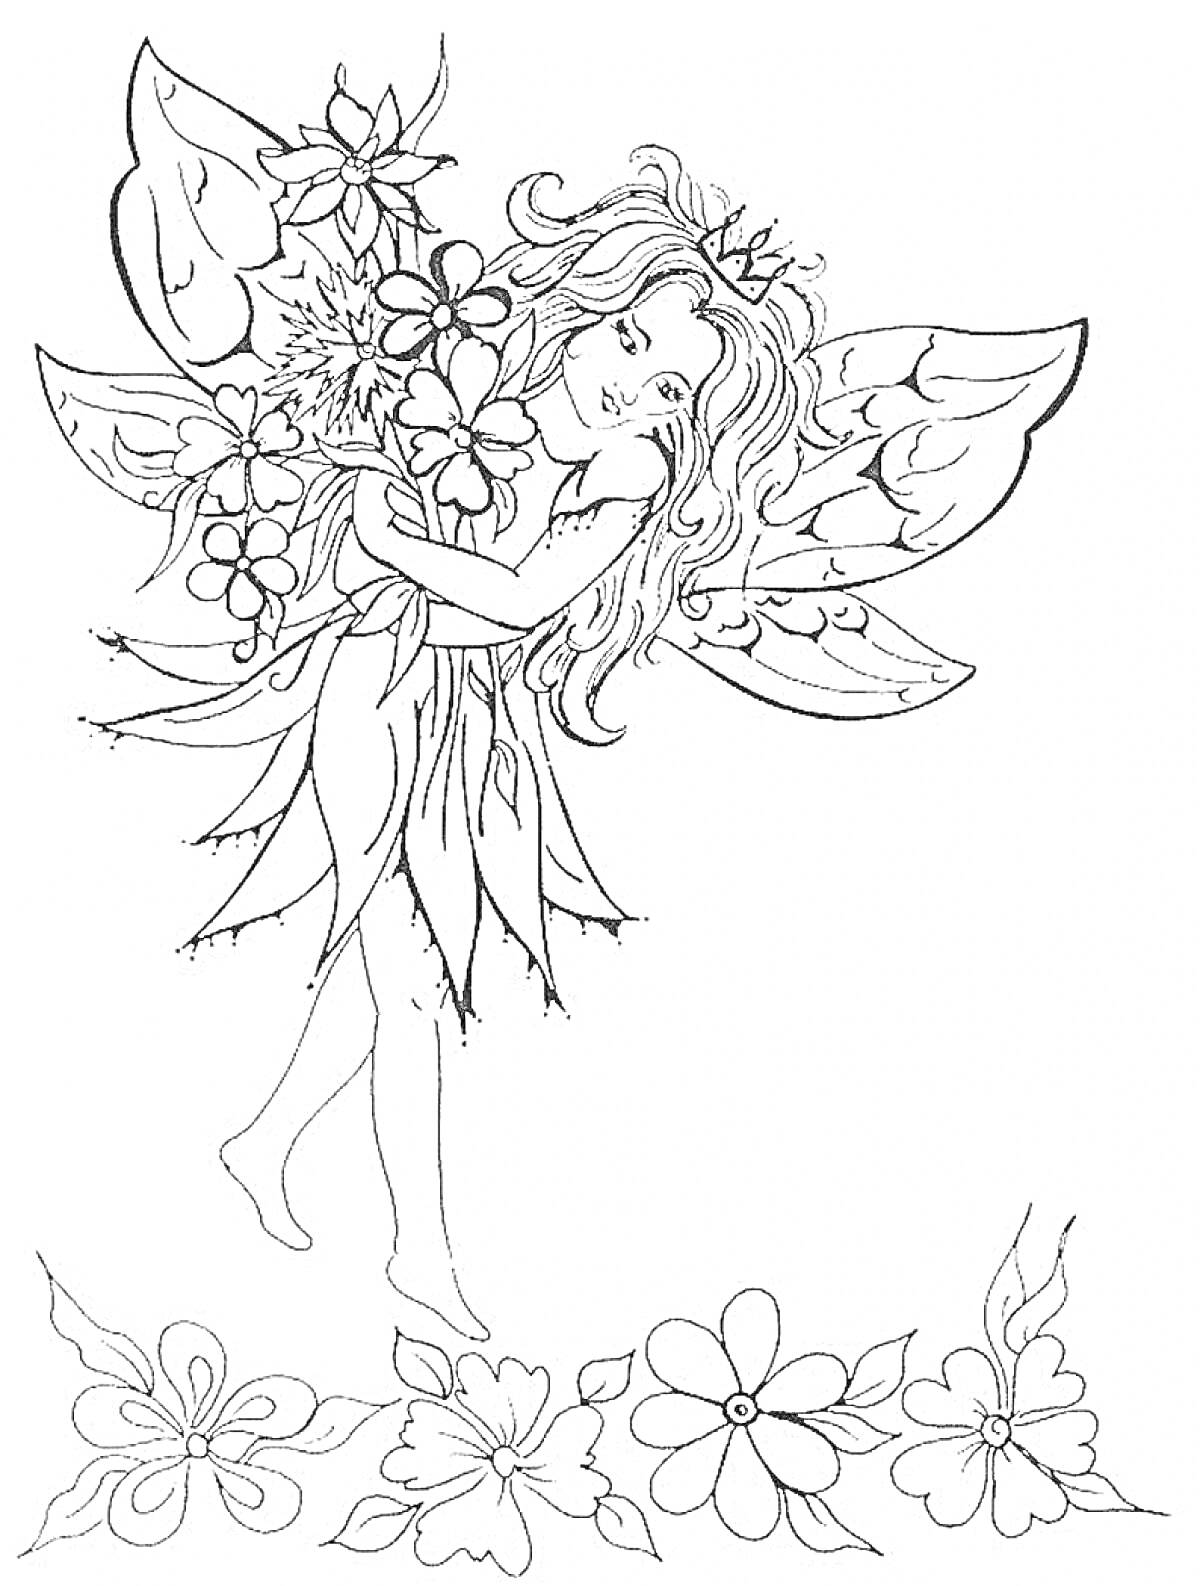 Раскраска Эльф с букетом цветов и цветами внизу